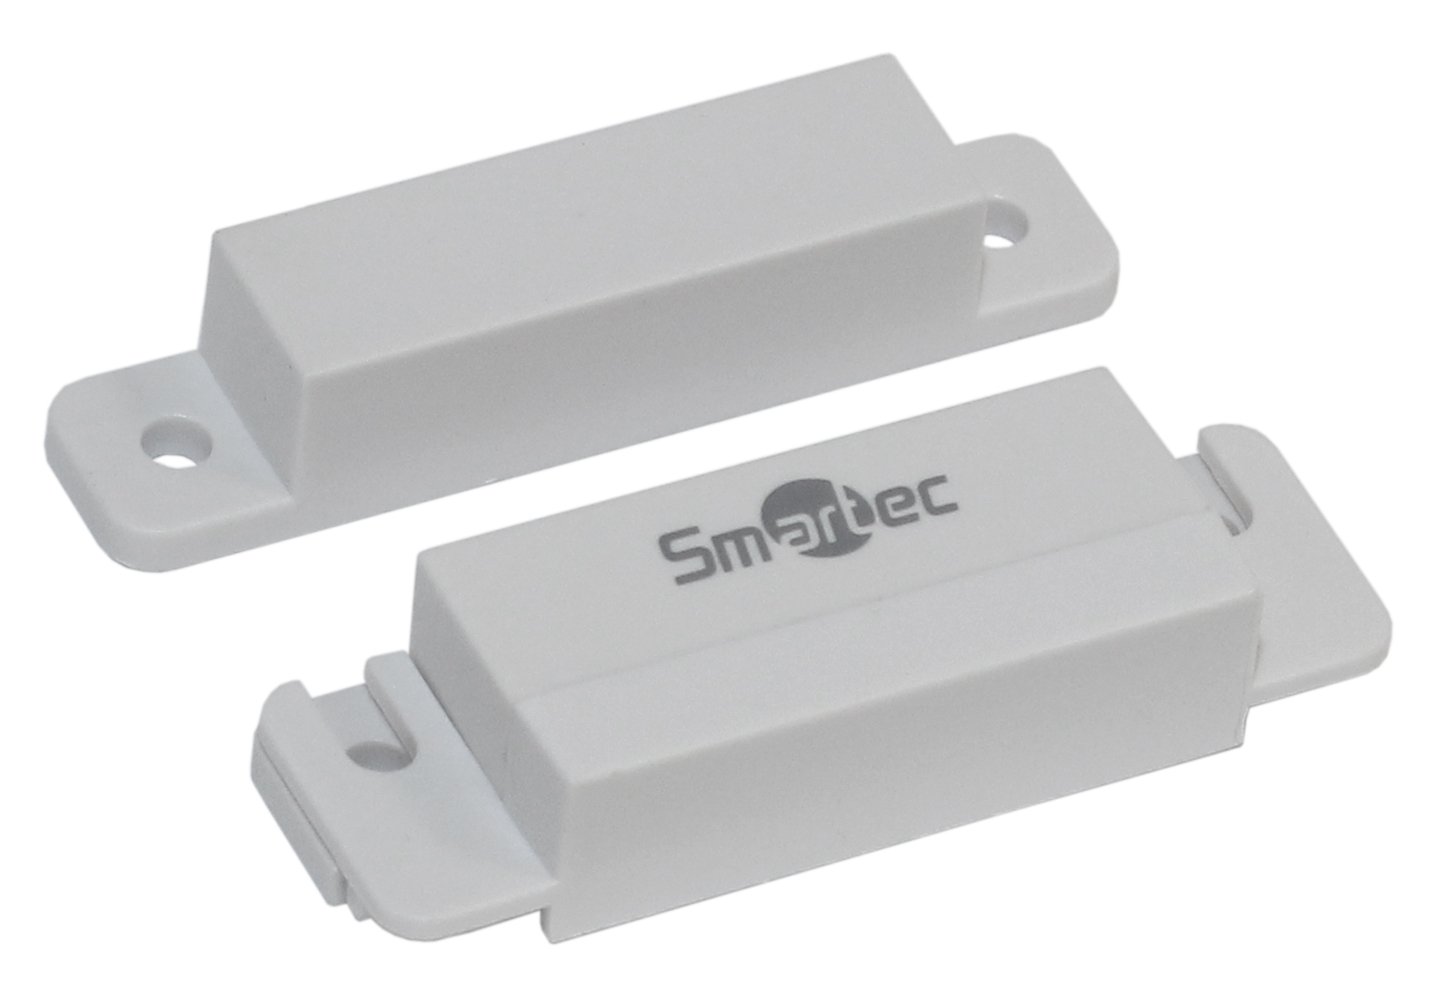 Все Smartec ST-DM121NC-WT магнитоконтактный датчик видеонаблюдения в магазине Vidos Group